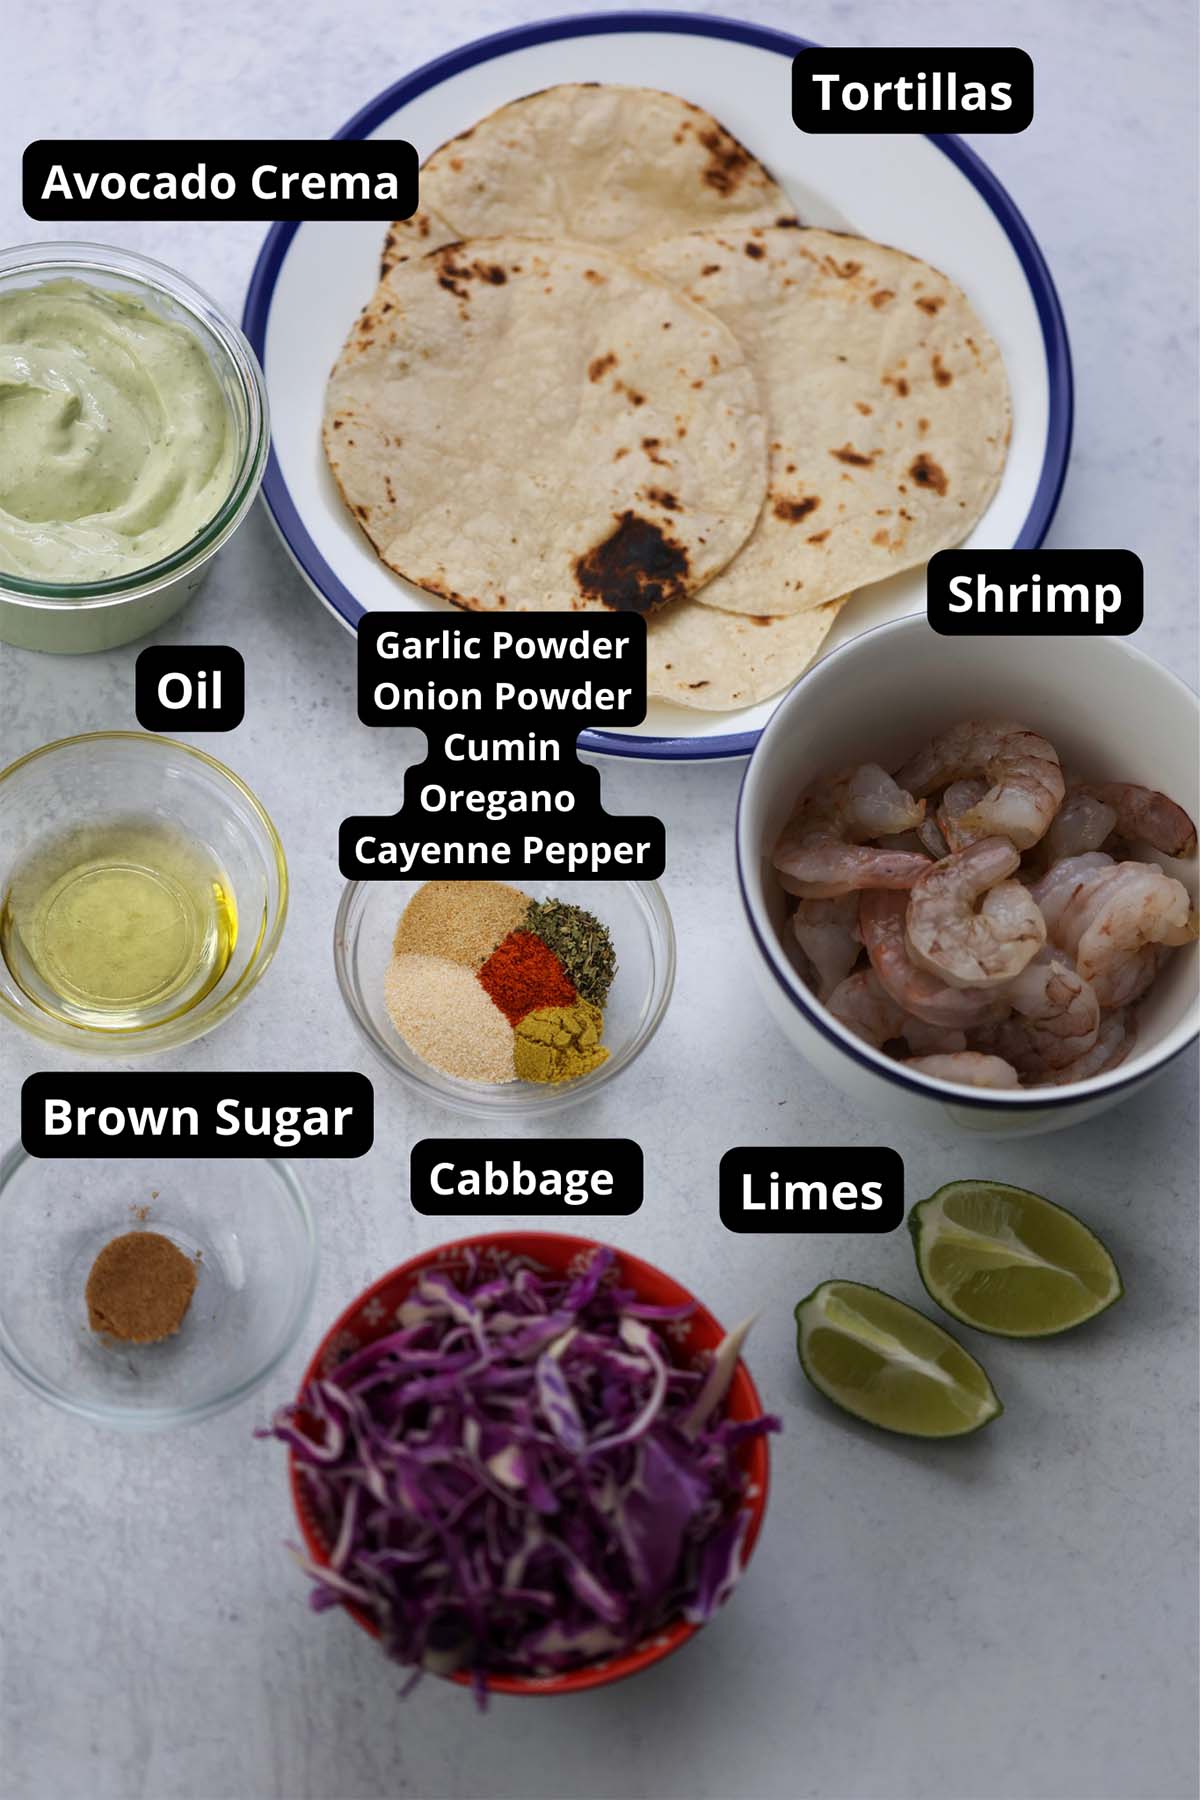 labeled ingredients for shrimp tacos. 